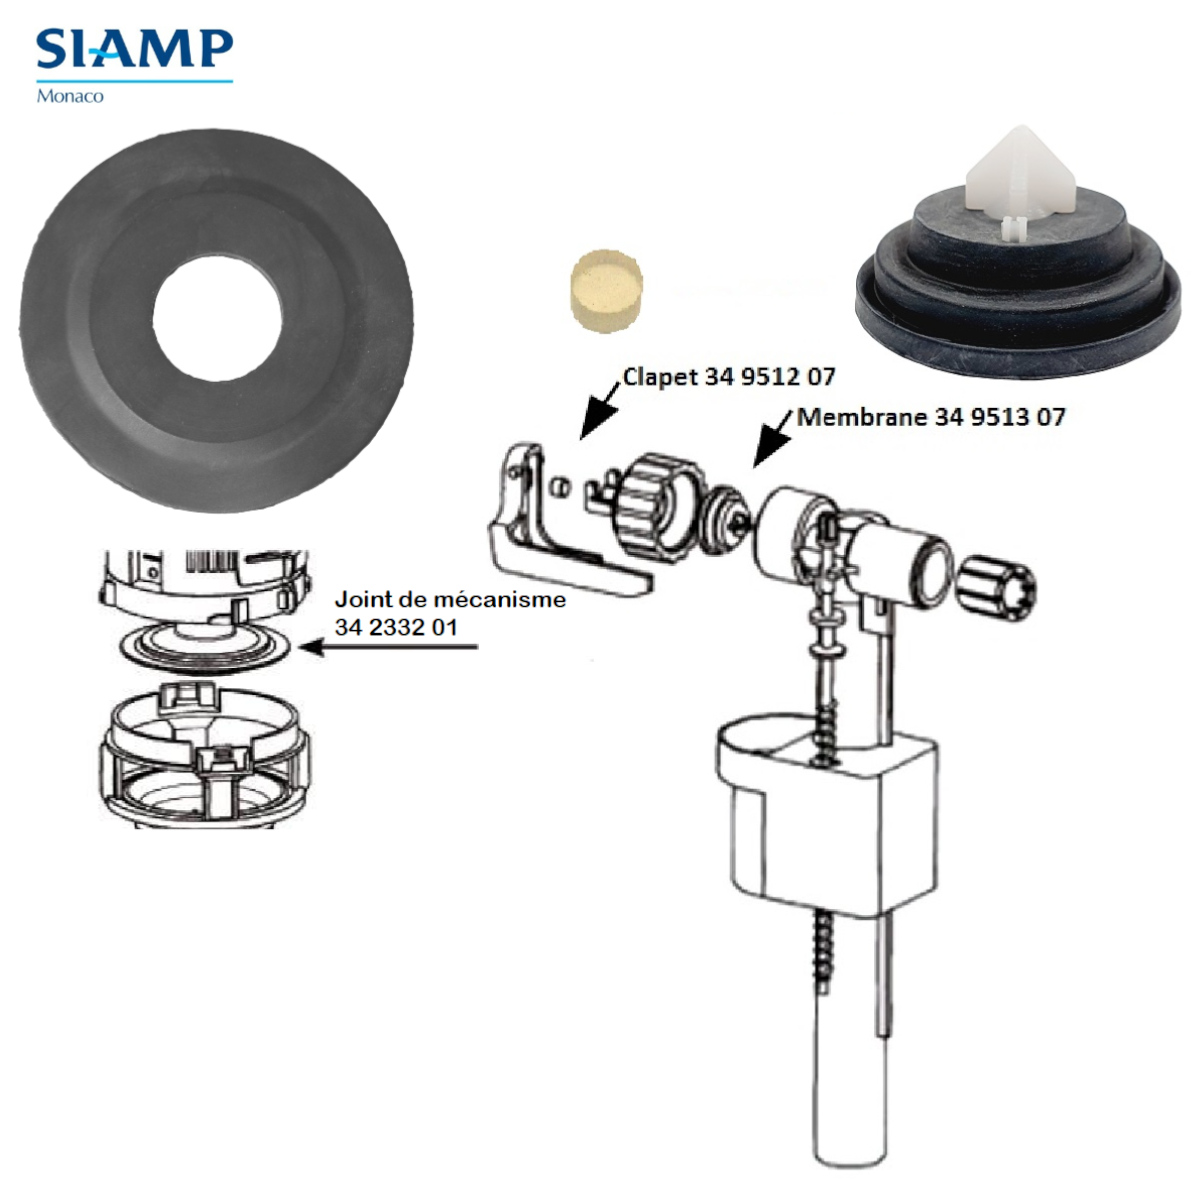 SIAMP KIT Joint de chasse + Membrane et Clapet flotteur.